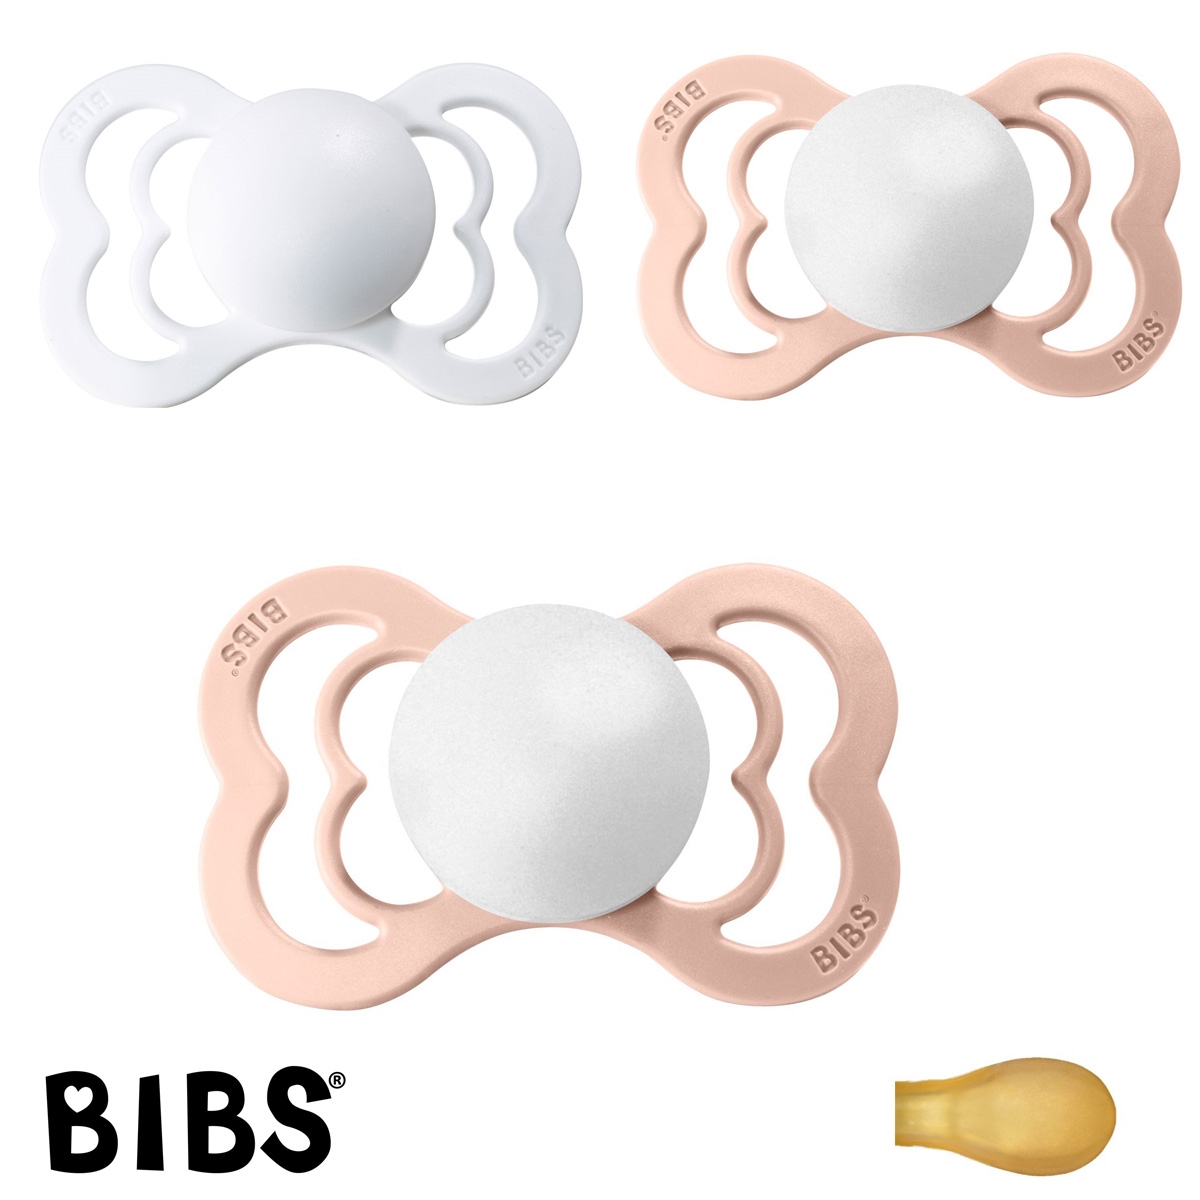 BIBS Supreme Sutter med navn, 2 Blush, 1 White, Symmetrisk Latex str.2 Pakke med 3 sutter